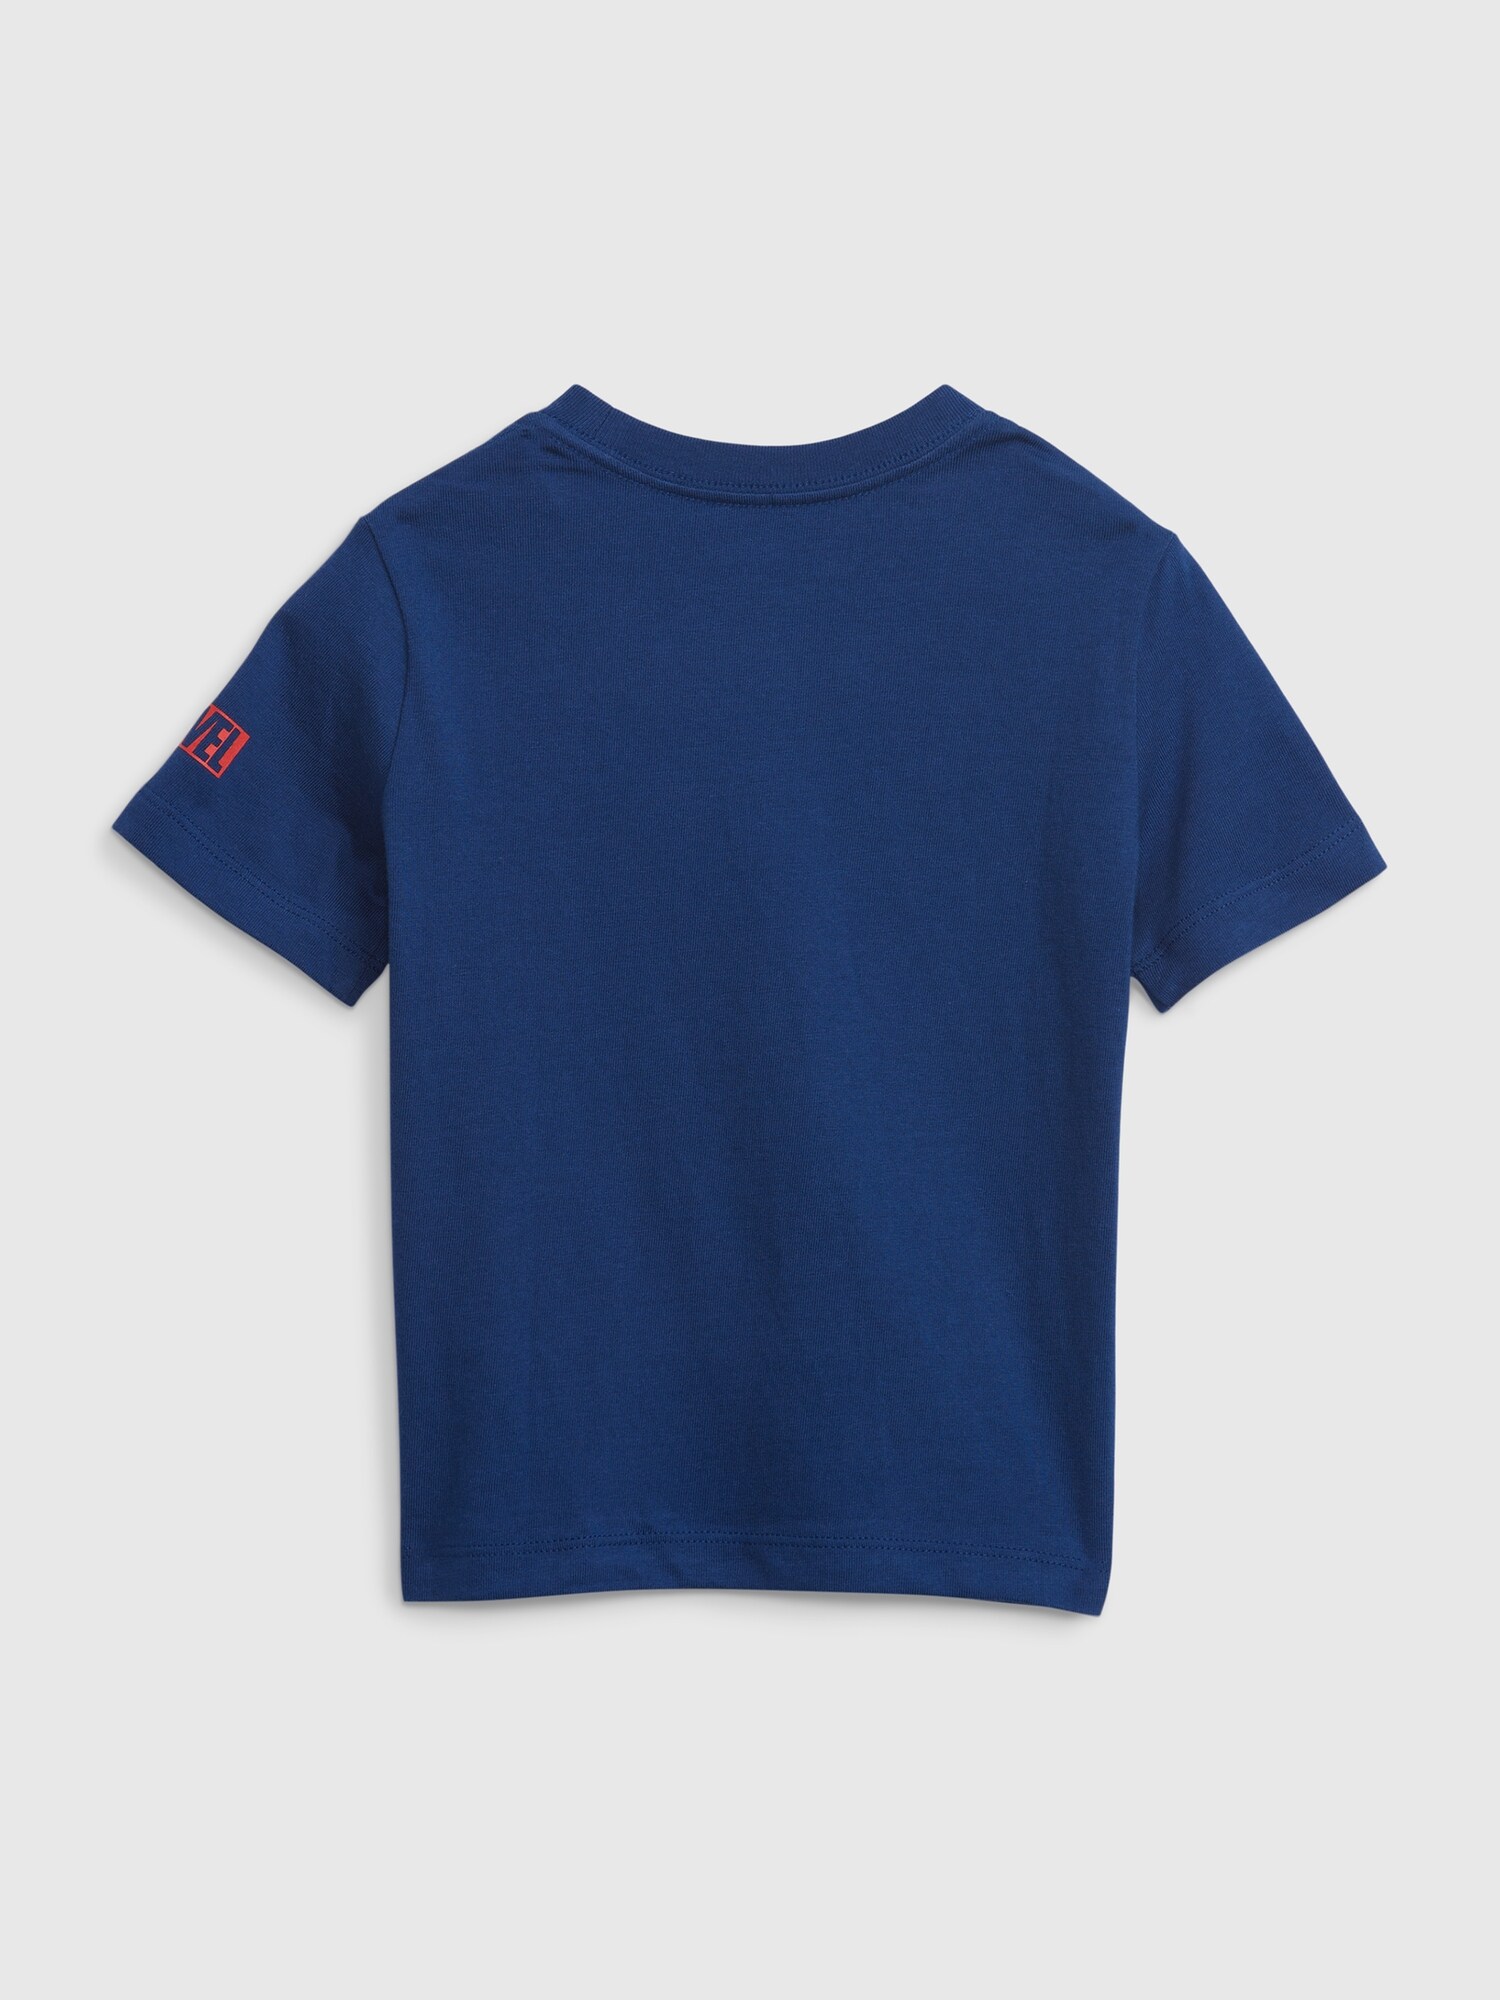 Gap公式オンラインストア babyGap マーベル スーパーヒーロー グラフィックTシャツ (幼児・ユニセックス)